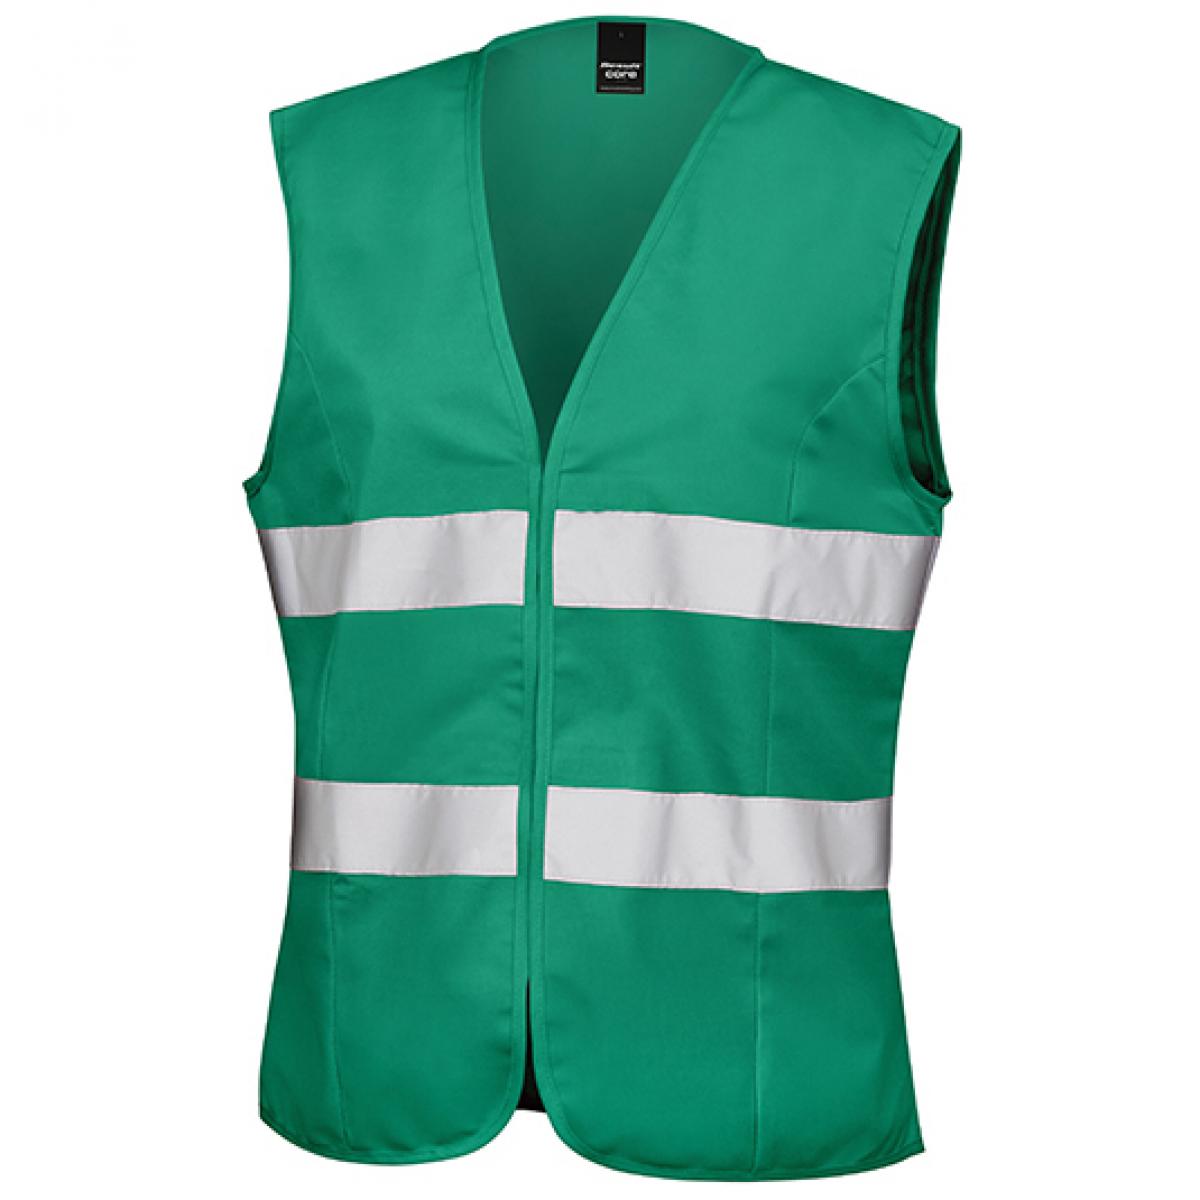 Hersteller: Result Core Herstellernummer: R334F Artikelbezeichnung: Damen Sicherheitsweste High Viz Tabard / leicht figurbetont Farbe: Paramedic Green